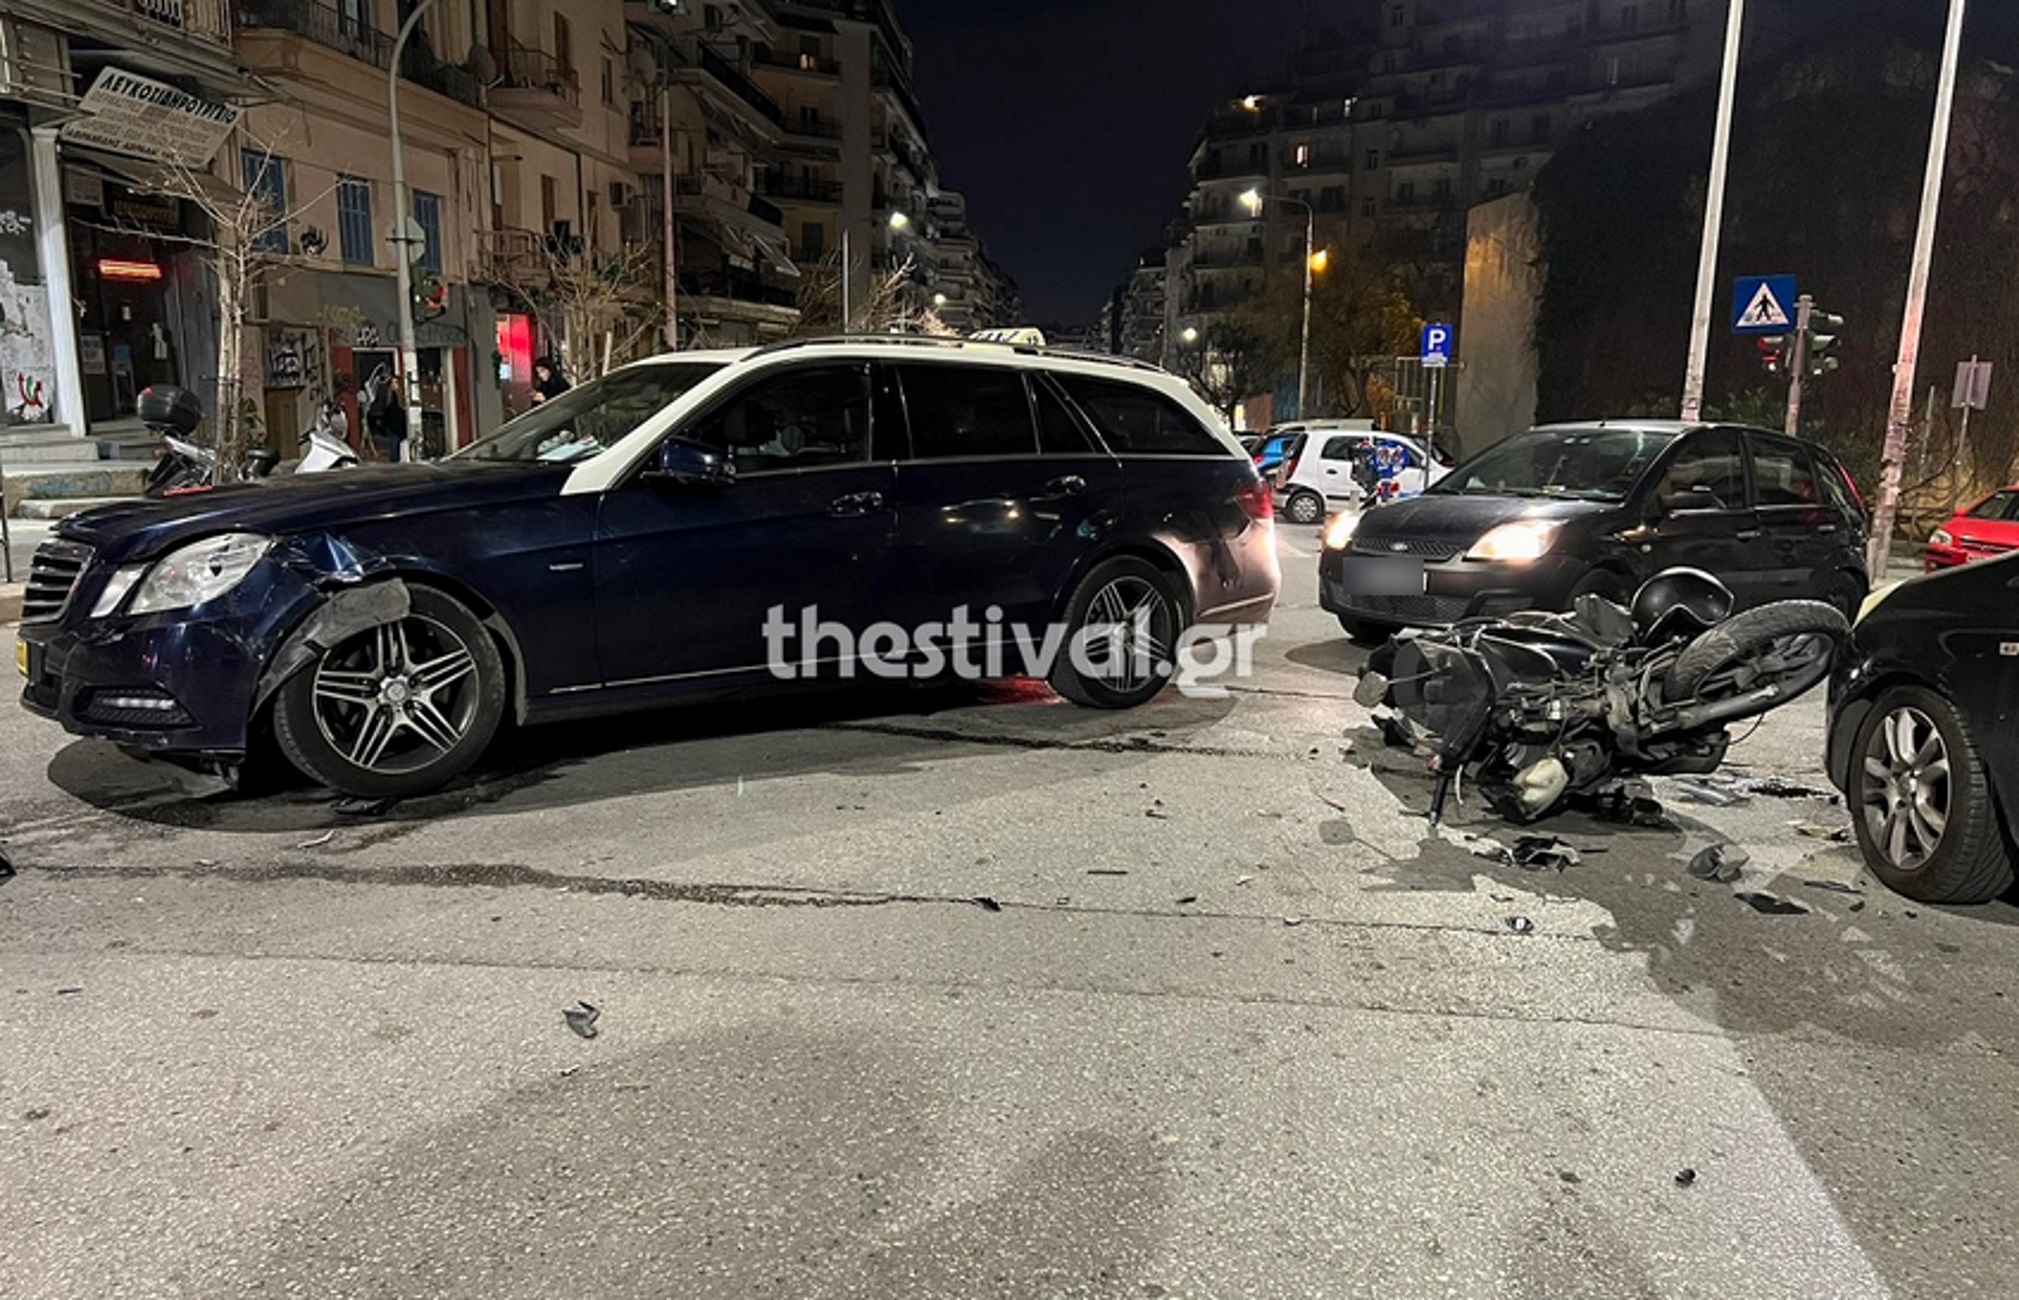 Θεσσαλονίκη: Έκλεψαν περίπτερο και τράκαραν με ταξί – Εικόνες μετά το τροχαίο